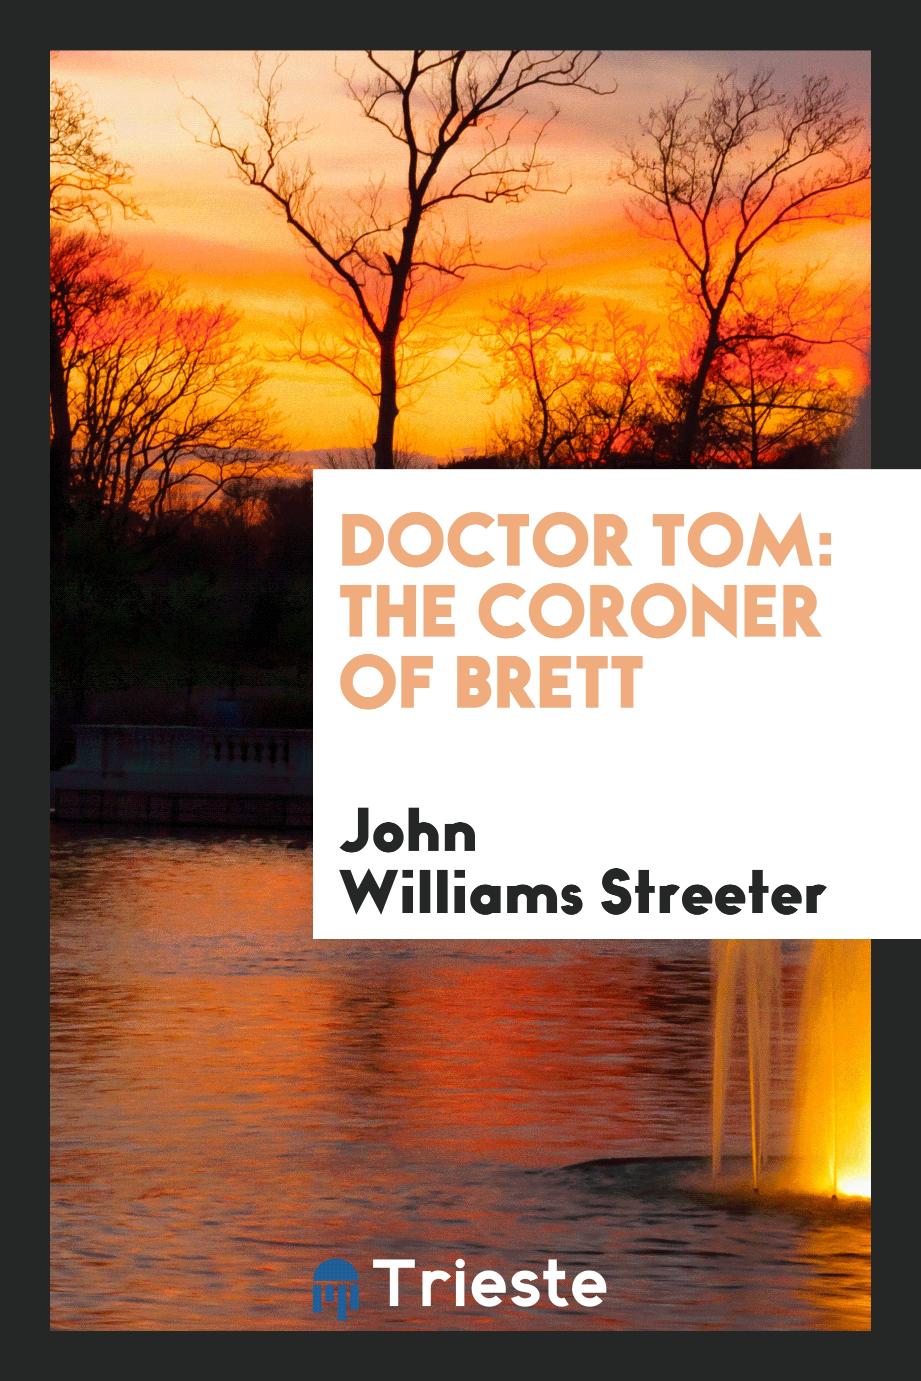 John Williams Streeter - Doctor Tom: The Coroner of Brett